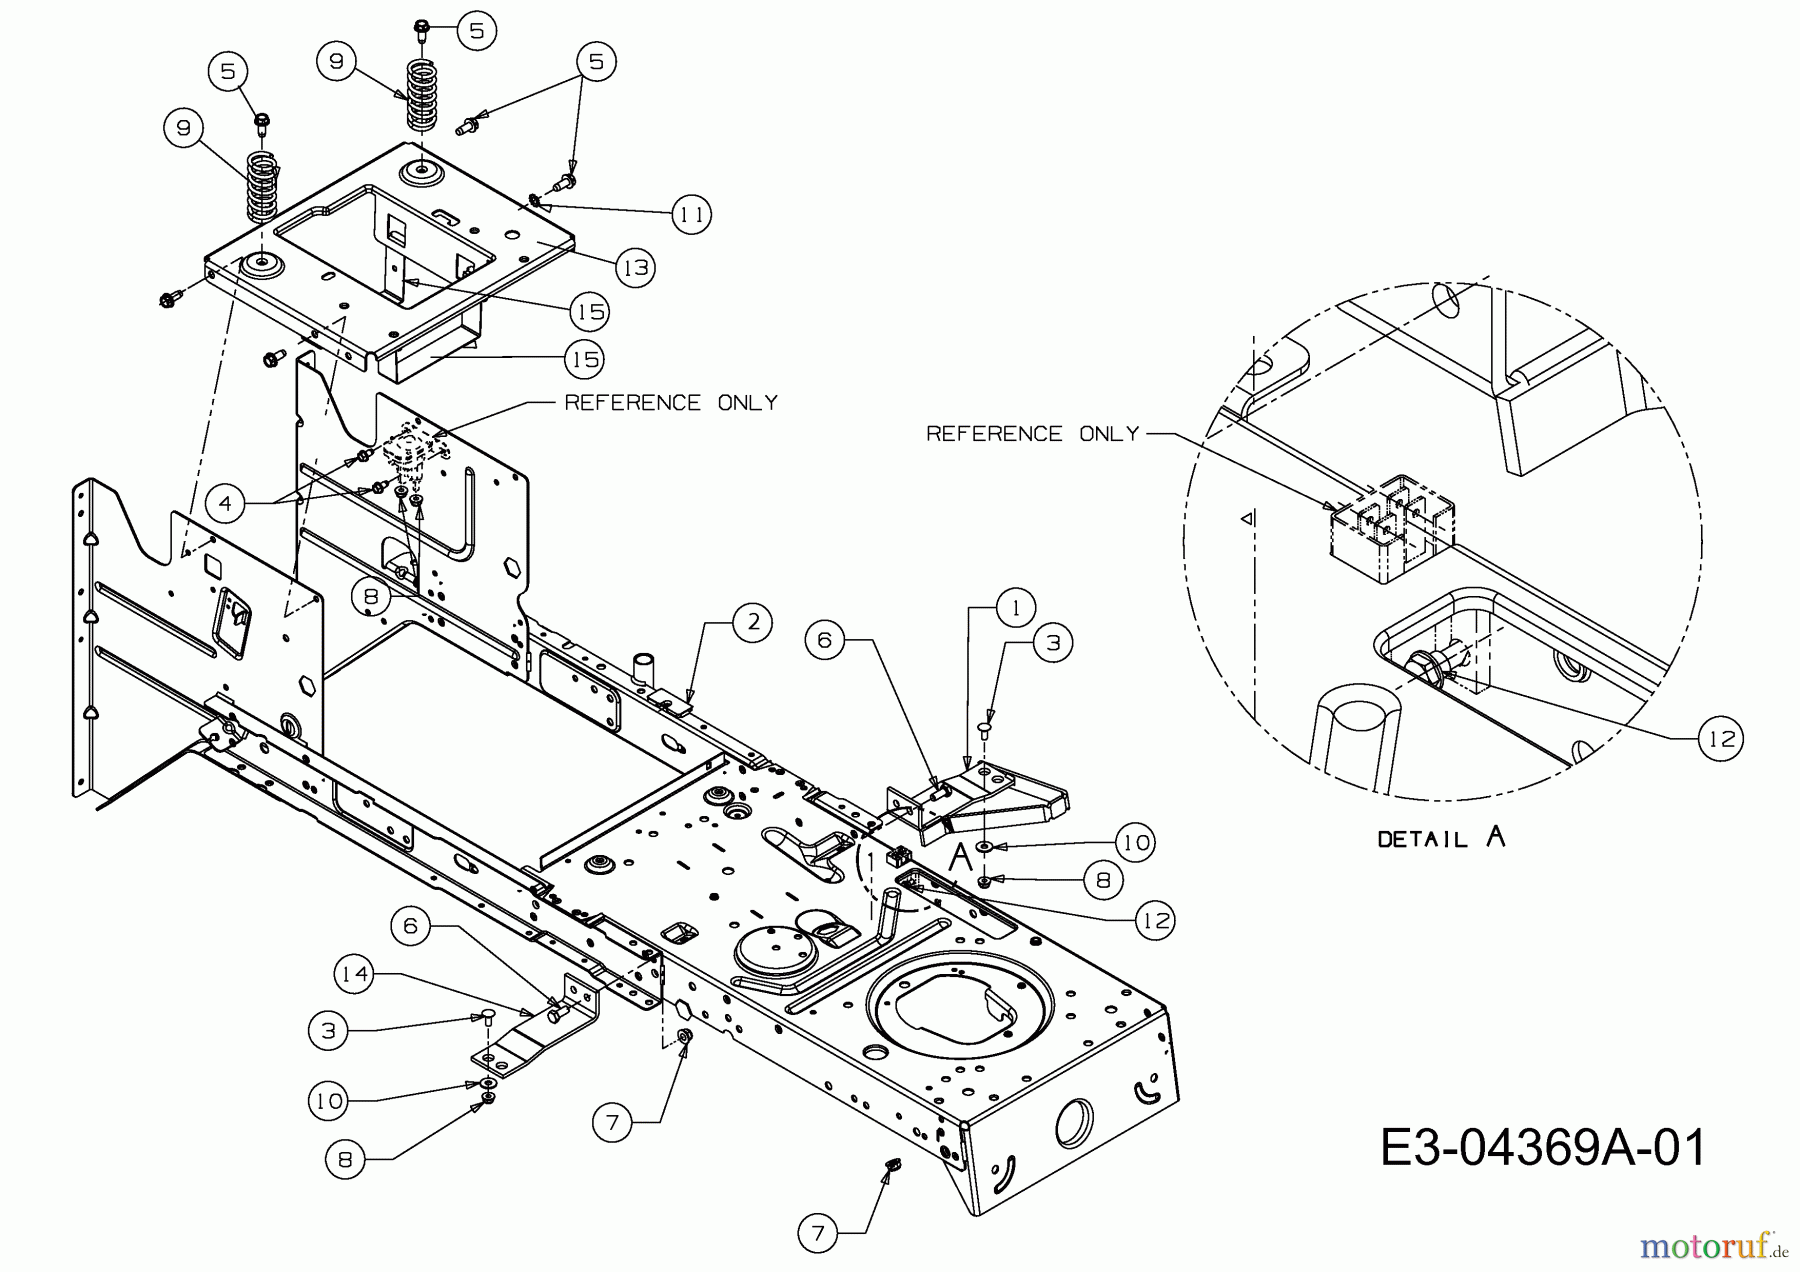  Oleo-Mac Rasentraktoren Krosser 92/13,5 T 13AH77KE636  (2010) Rahmen